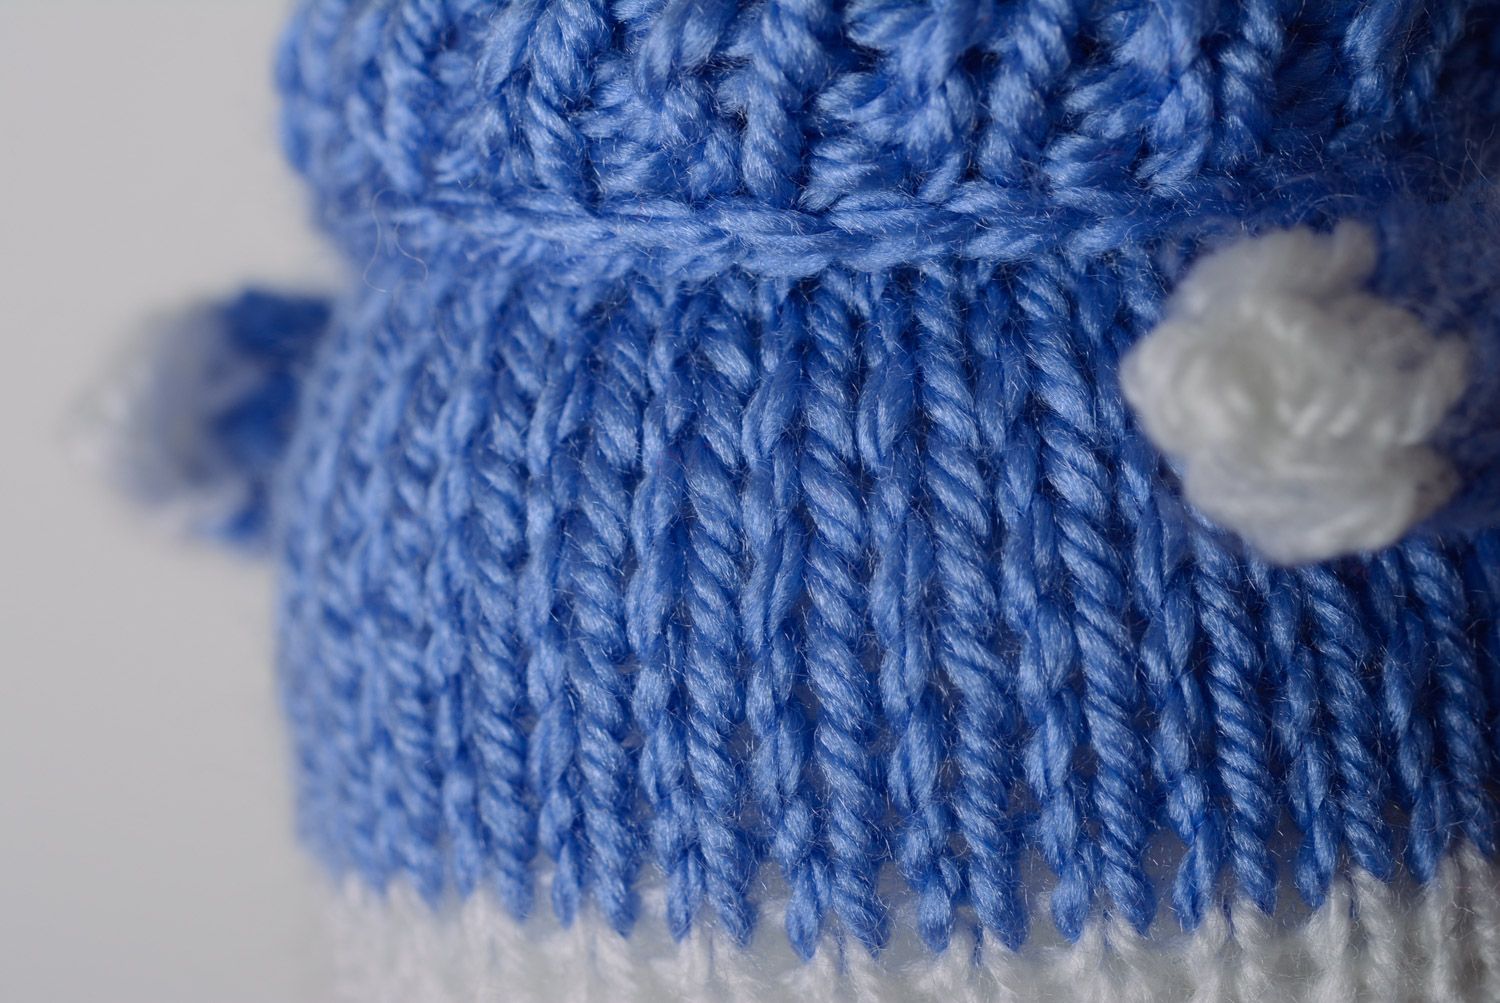 Juguete tejido con agujas liebre blanca en suéter azul sonriente artesanal  foto 5